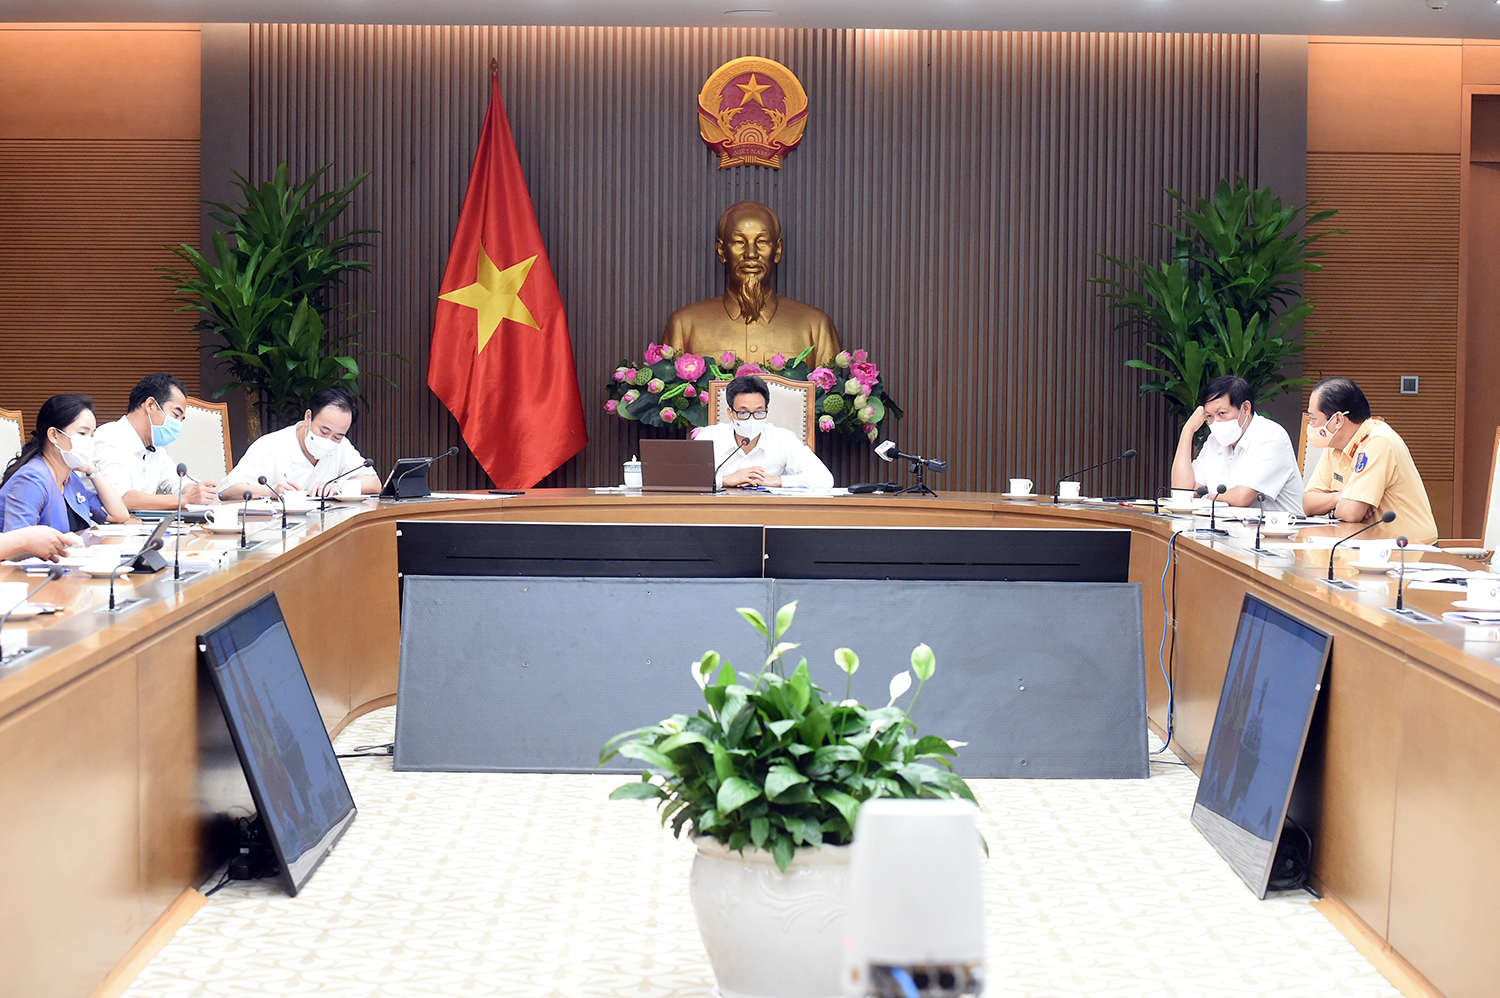 Phó Thủ tướng Vũ Đức Đam chủ trì cuộc họp Ban Chỉ đạo Quốc gia phòng, chống dịch Covid-19 và trực tuyến với tỉnh Tiền Giang vào chiều ngày 25/6/2021.